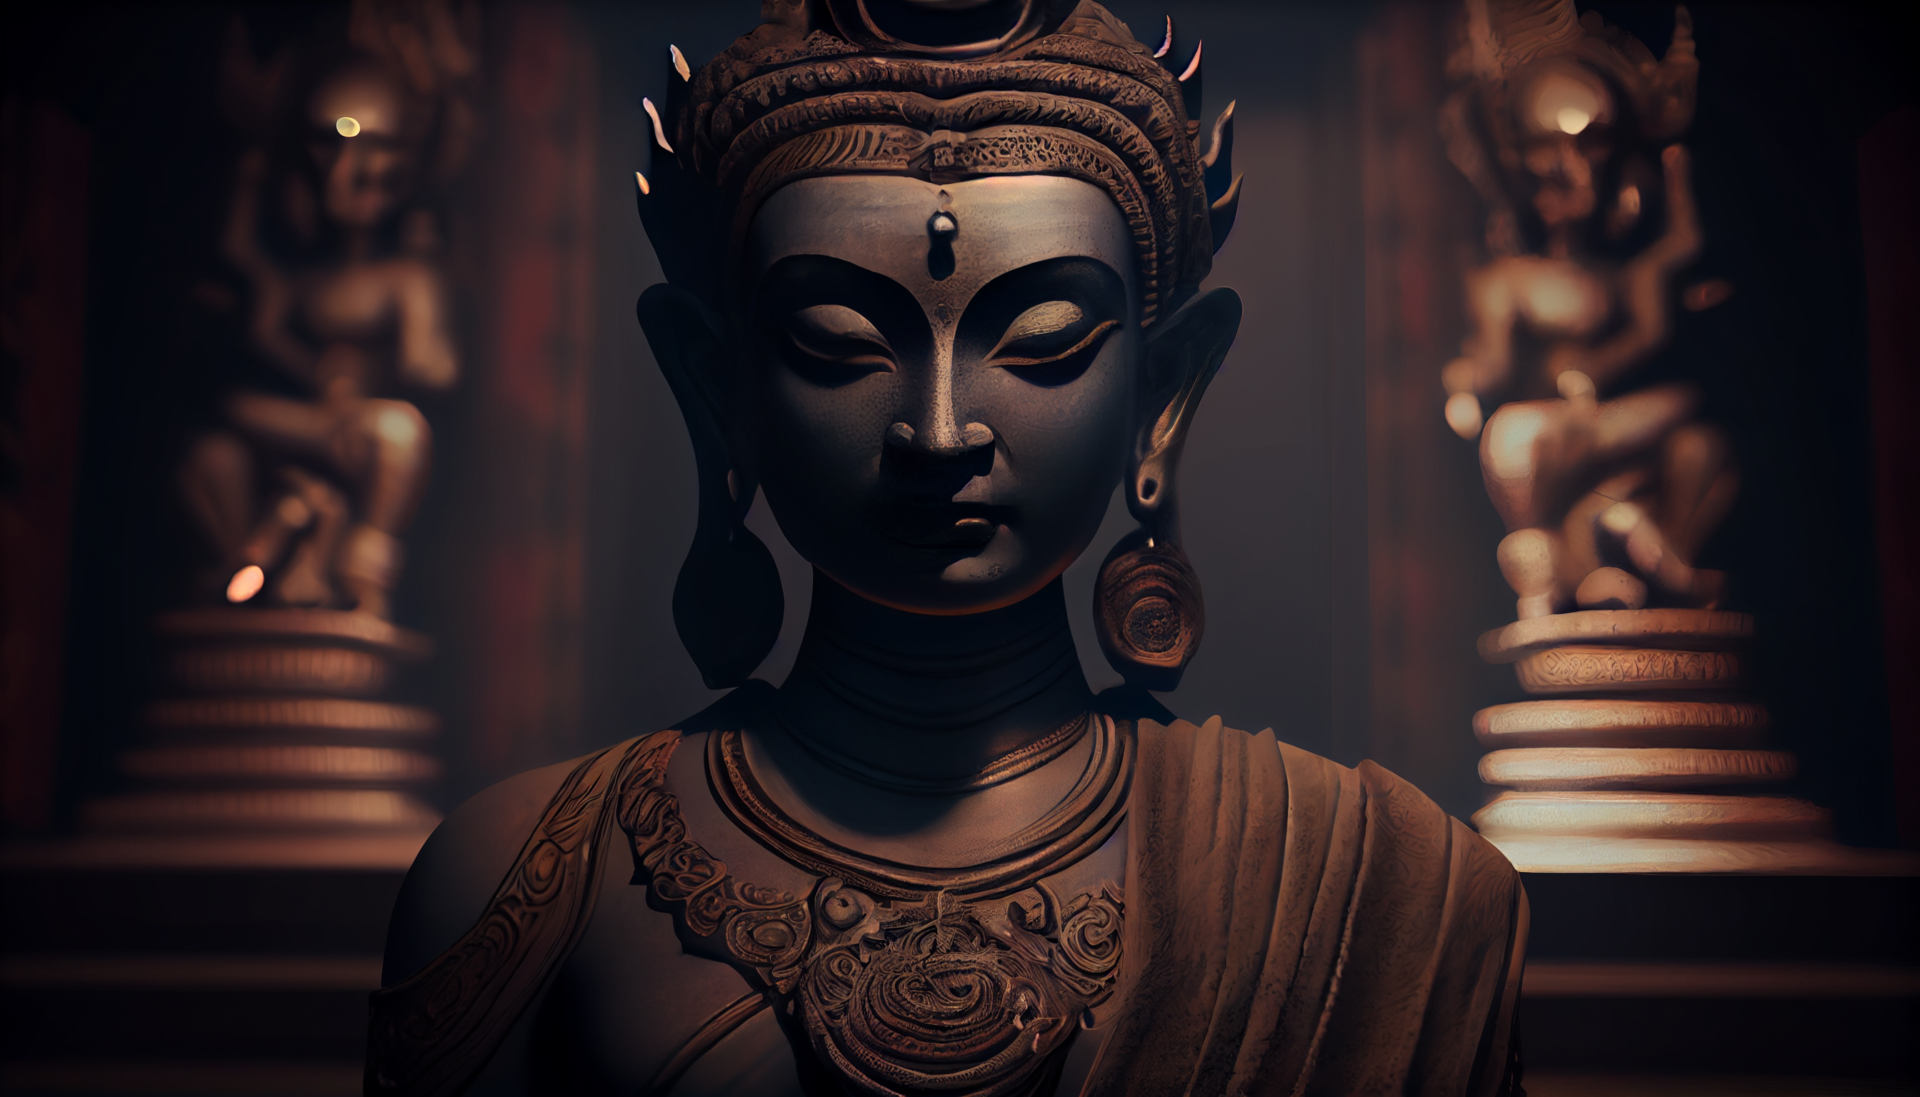 dark_budha_sitting_in_meditation_pose_intricate_details